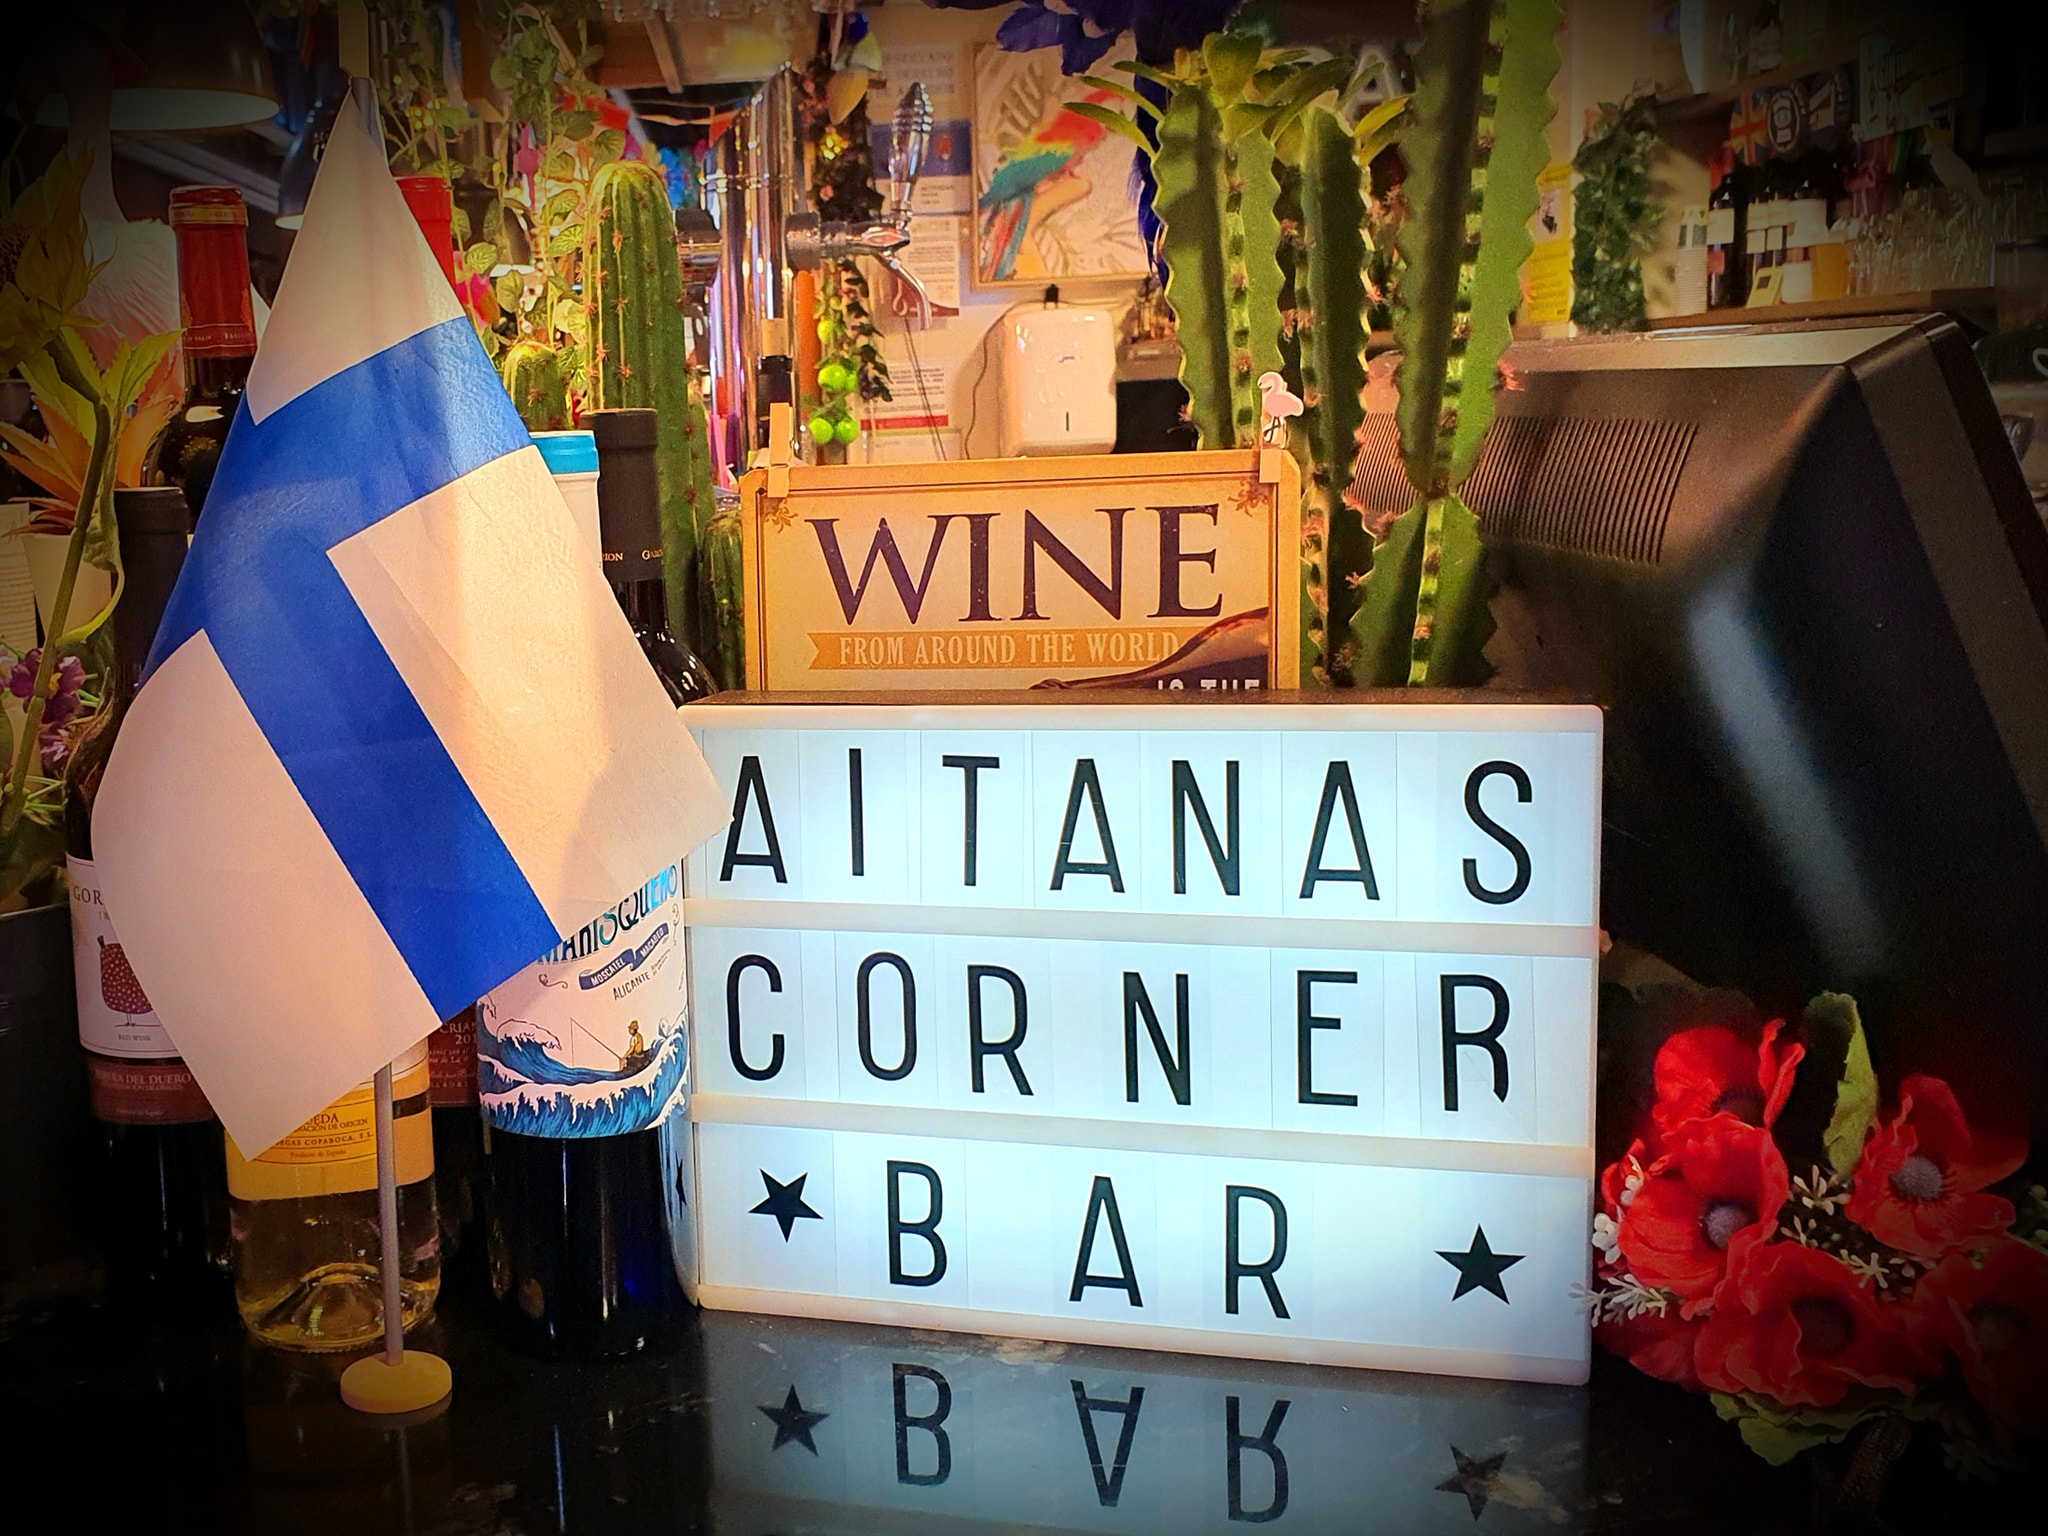 Aitana’s Corner Bar